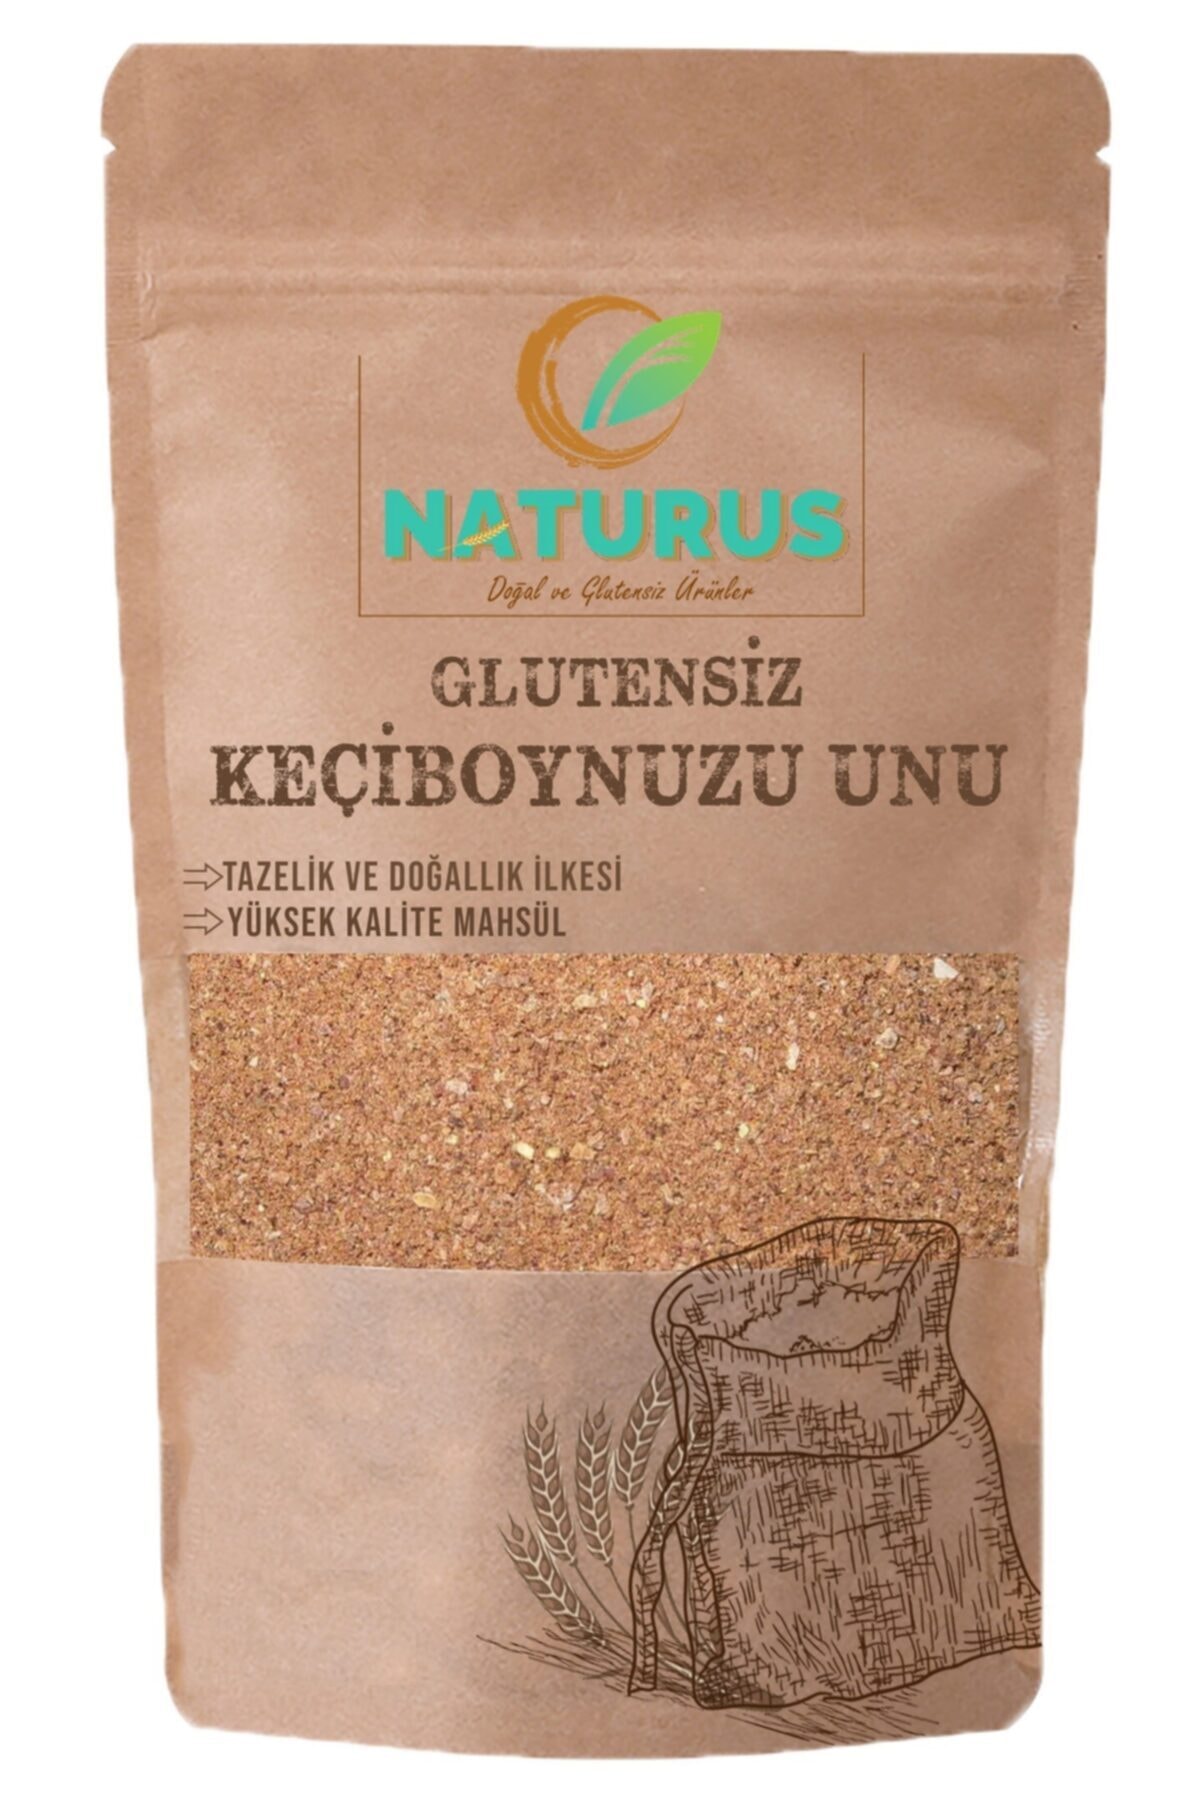 NATURUS Doğal Keçiboynuzu Unu Glutensiz 500 gr